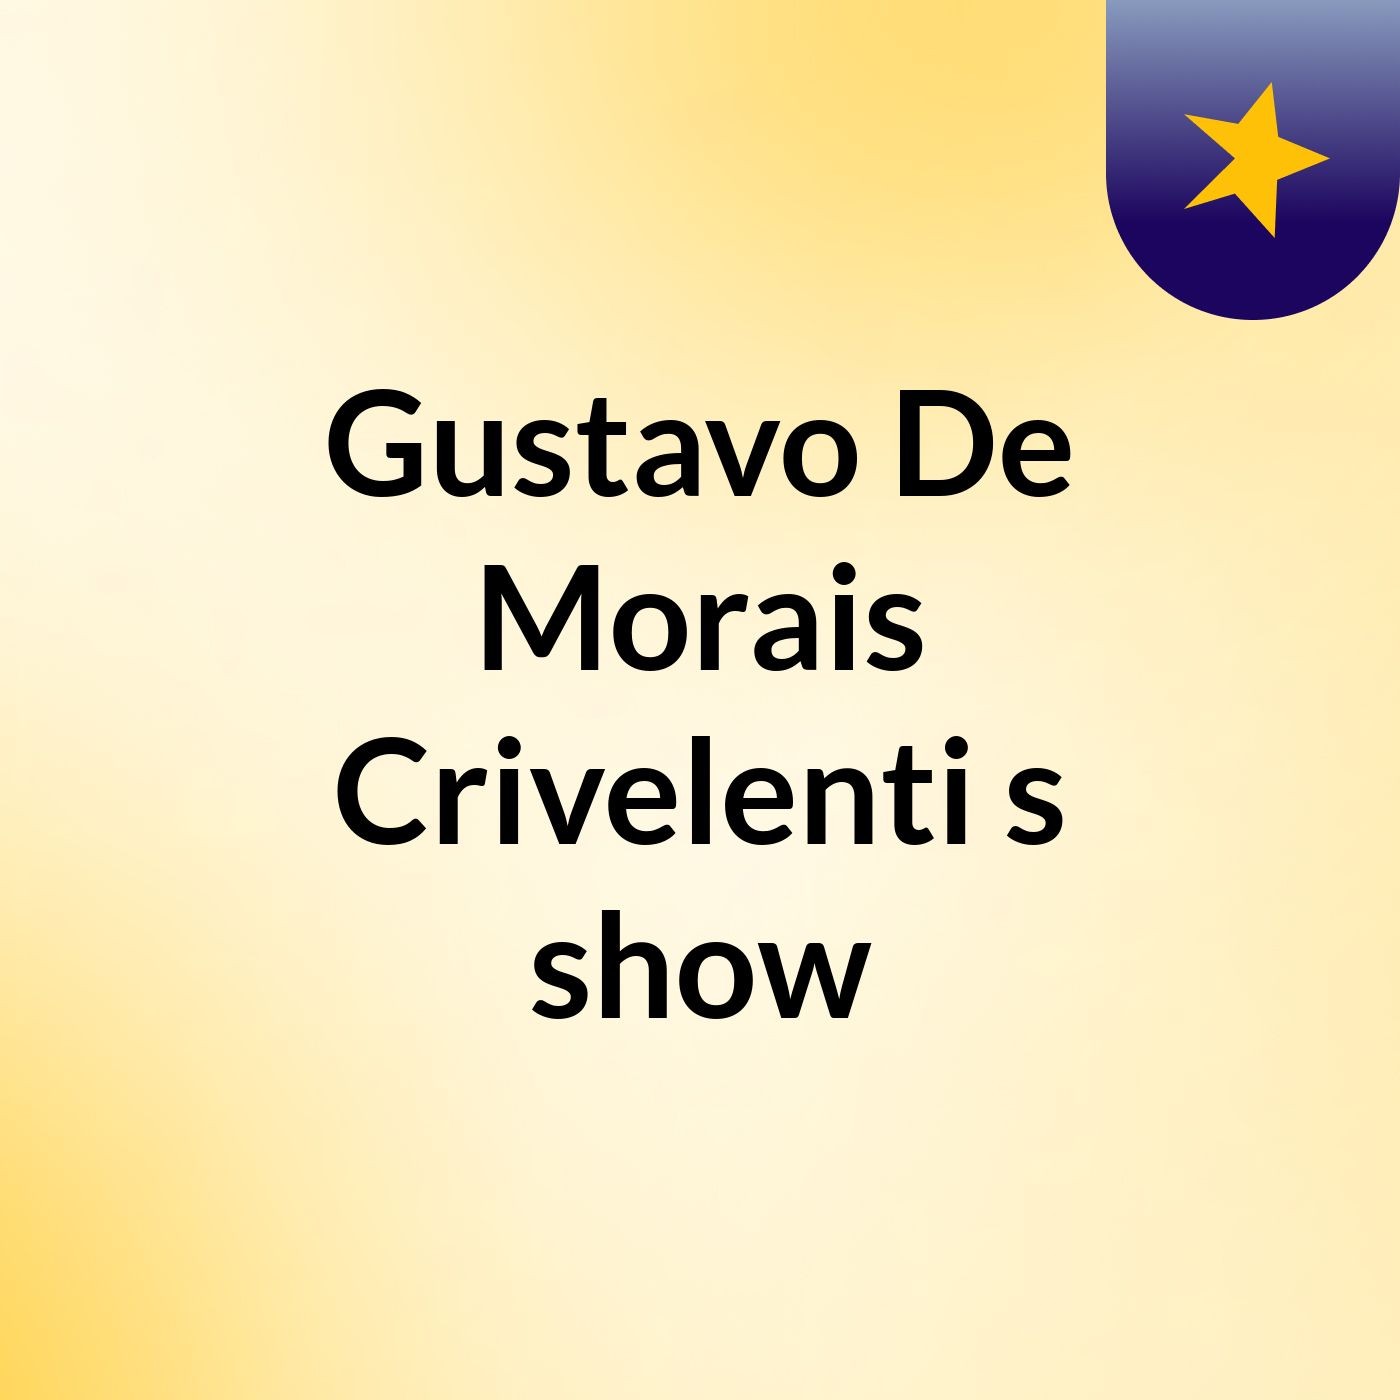 Gustavo De Morais Crivelenti's show